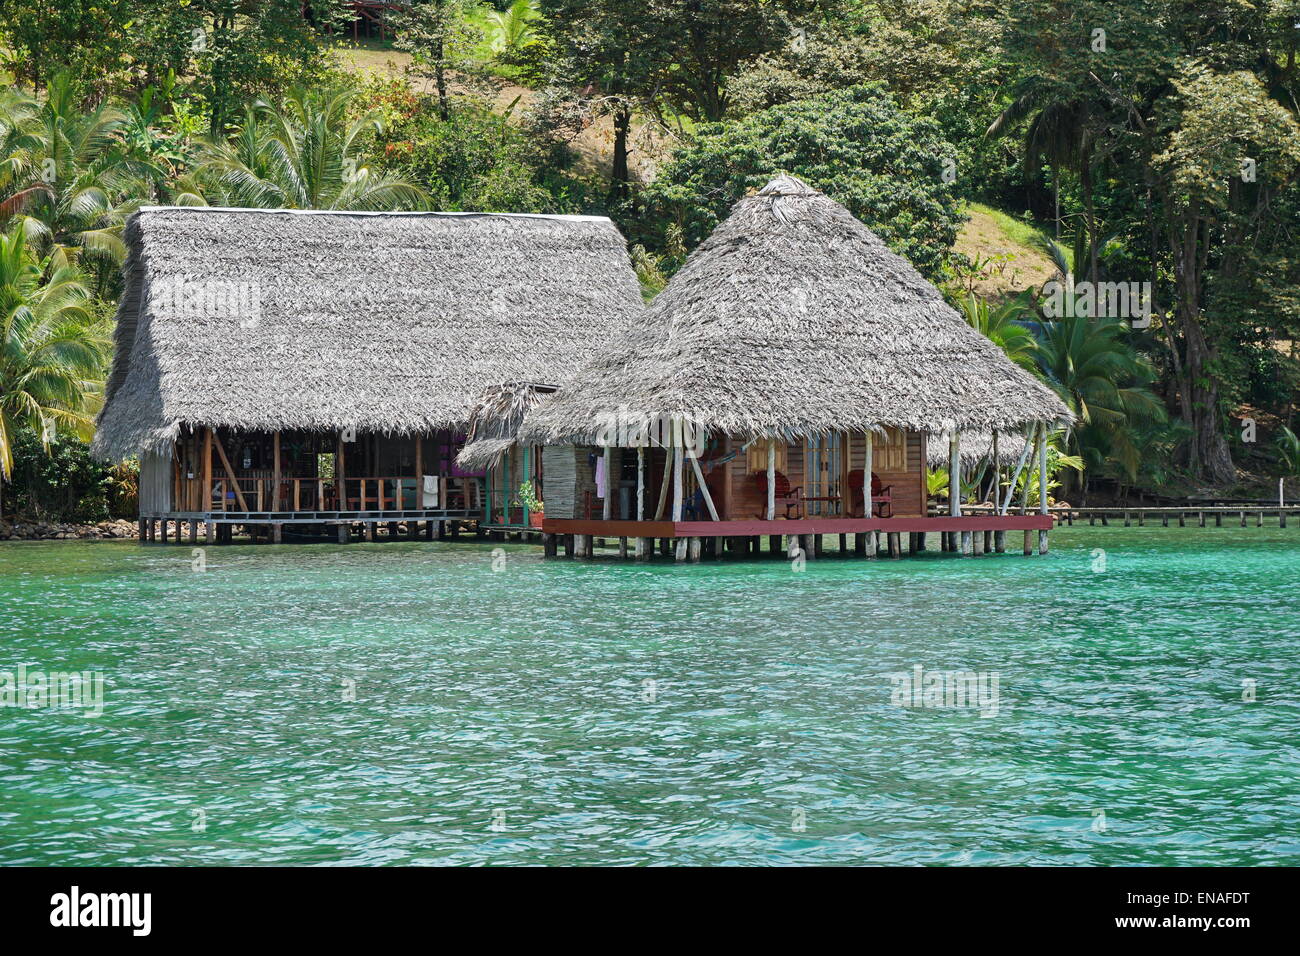 Tropical ecolodge sull'acqua con tetto di paglia realizzato da foglie di palme, Costa Caraibica di Panama, America Centrale Foto Stock